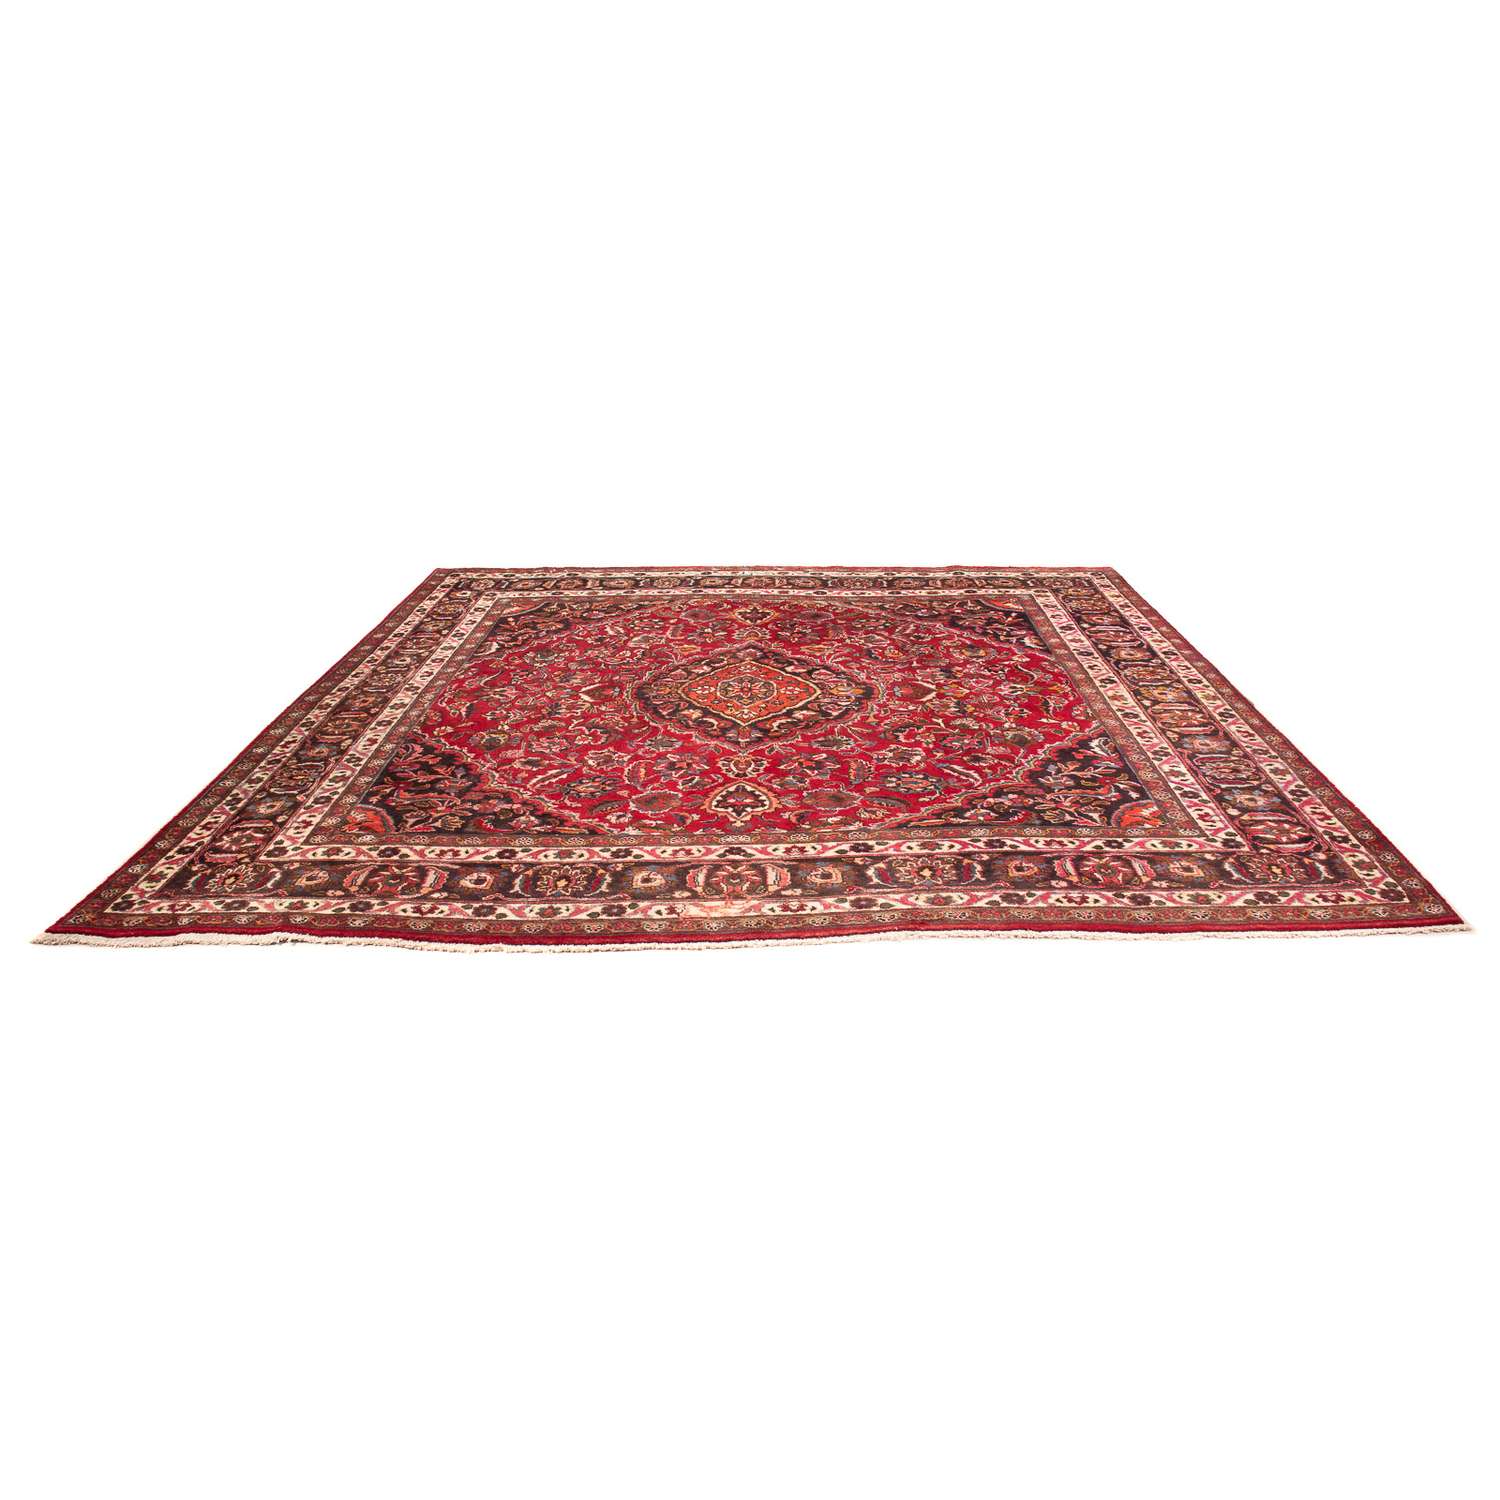 Dywan perski - Klasyczny kwadratowy  - 320 x 300 cm - ciemna czerwień